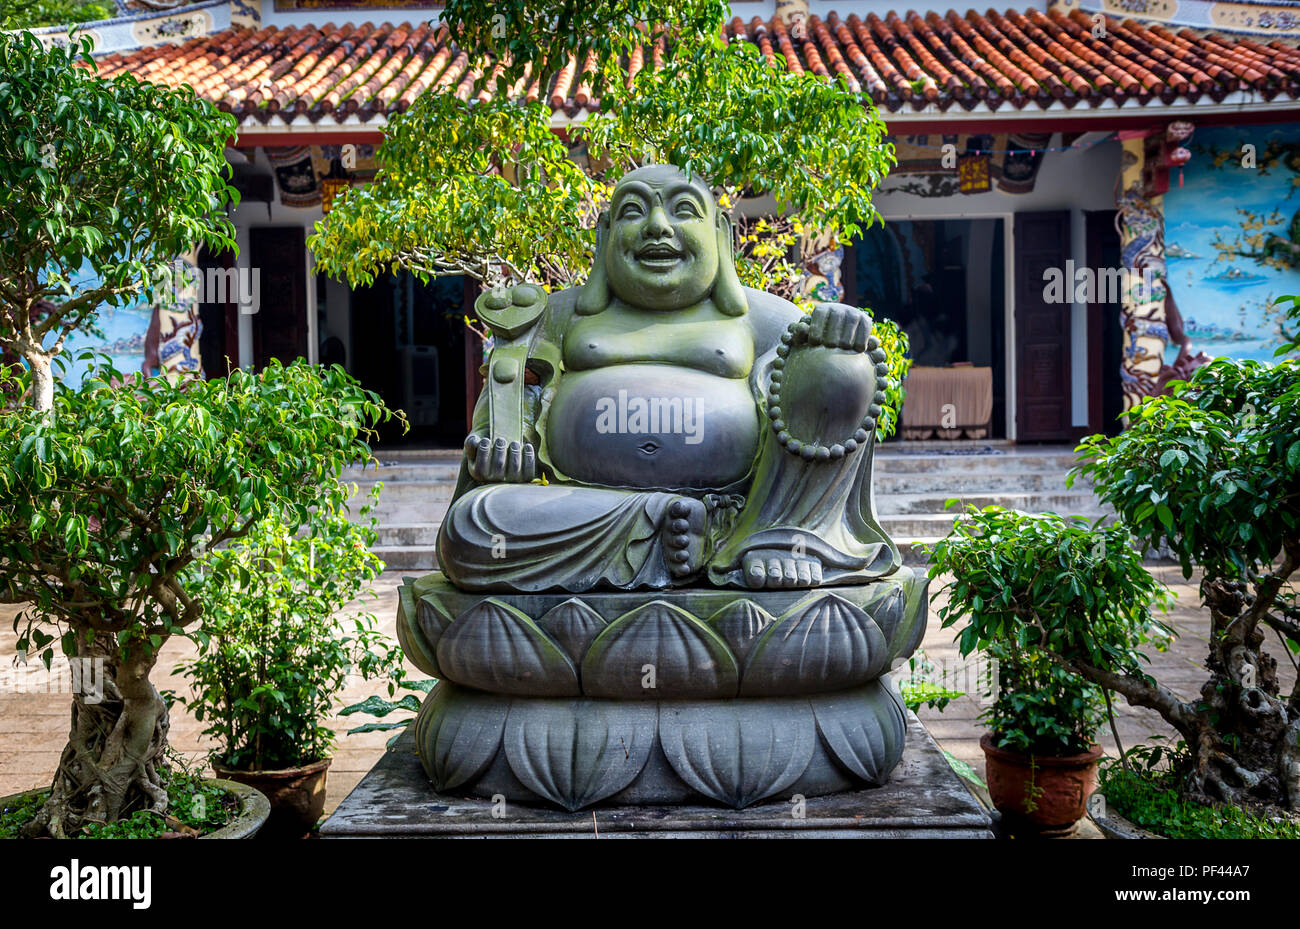 Ein Big Fat Buddha mit kleinen Pflanzen und Bäume vor einem Tempel, eine beliebte Touristenattraktion südlich von Hue, Vietnam. Stockfoto